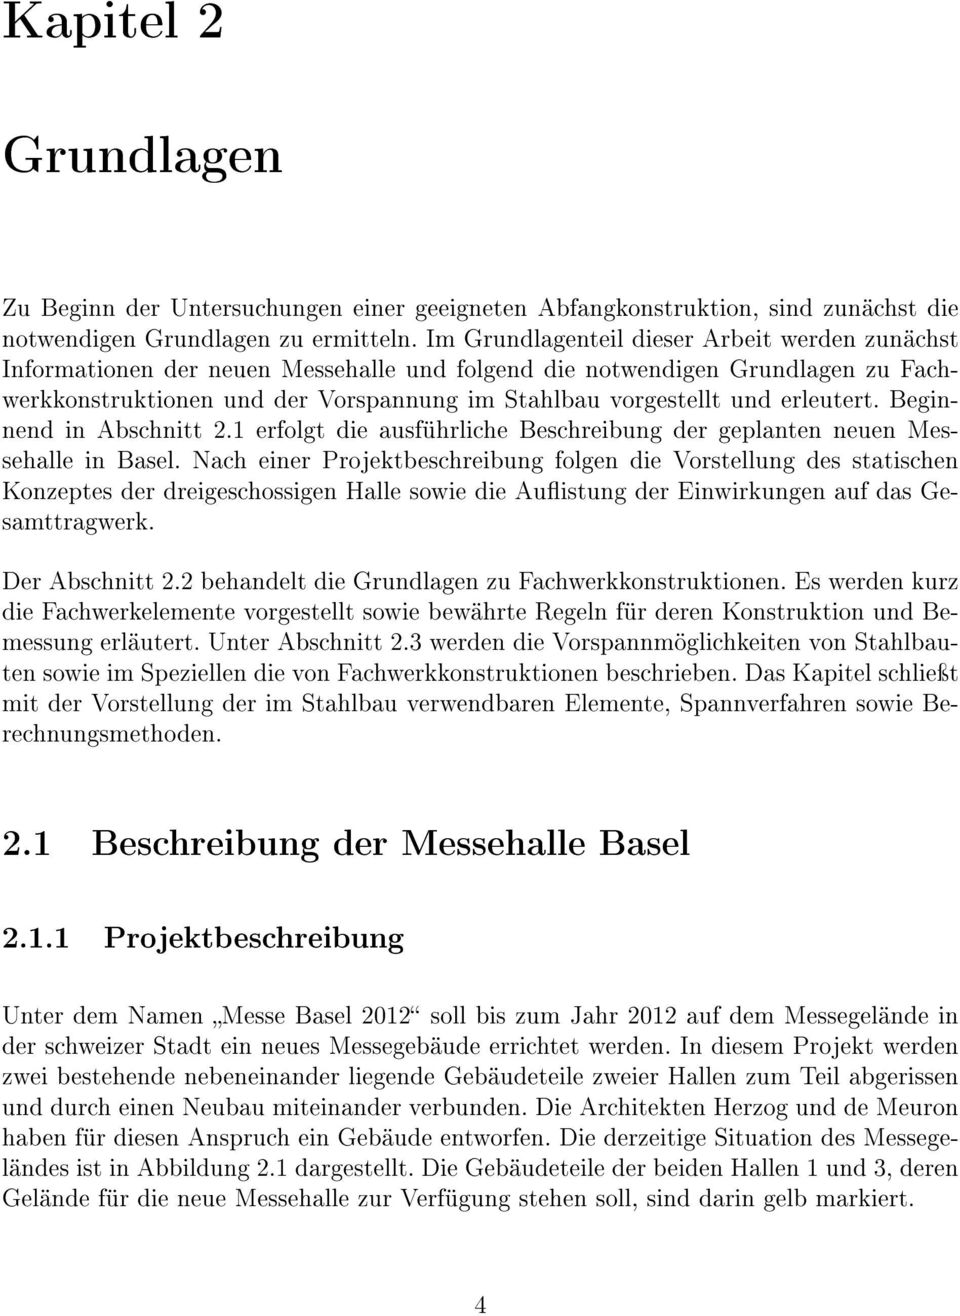 erleutert. Beginnend in Abschnitt 2.1 erfolgt die ausführliche Beschreibung der geplanten neuen Messehalle in Basel.